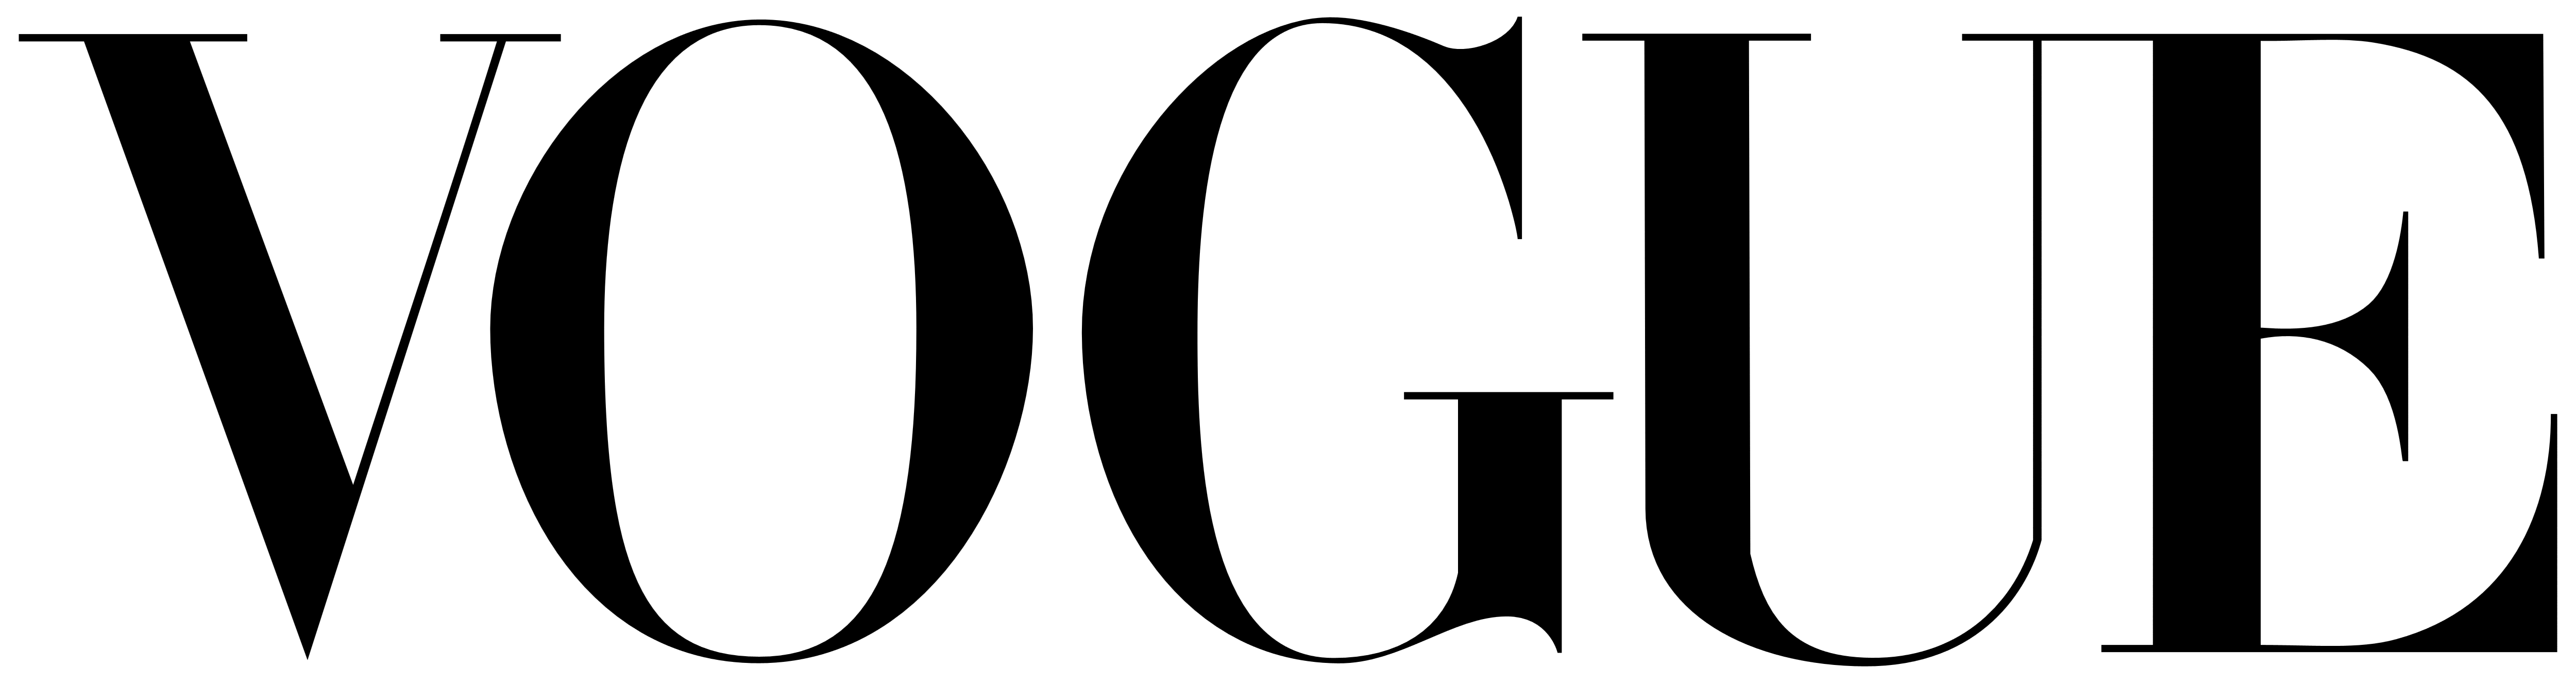 Vogue White Logo - VOGUE – Logos Download